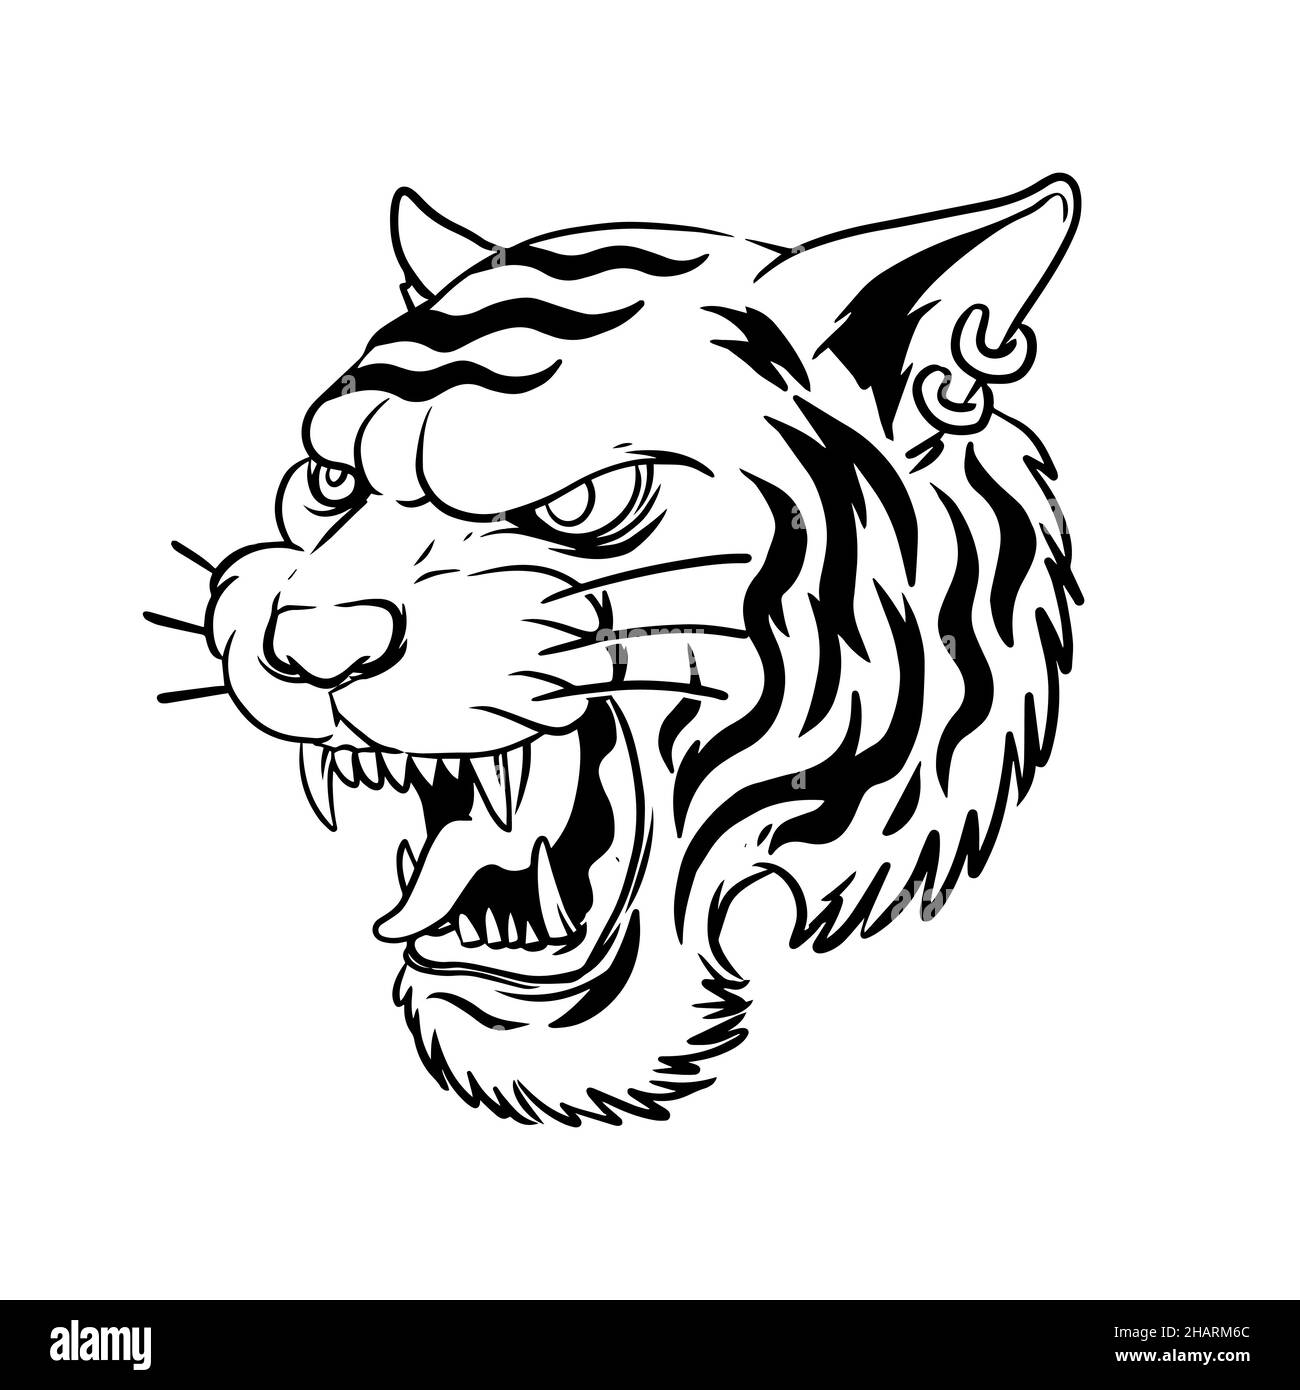 un tigre gruñido desde el lado. una ilustración dibujada a mano de una cabeza de animal salvaje. dibujo de líneas para emblema, cartel, pegatina, tatuaje, etc. Foto de stock